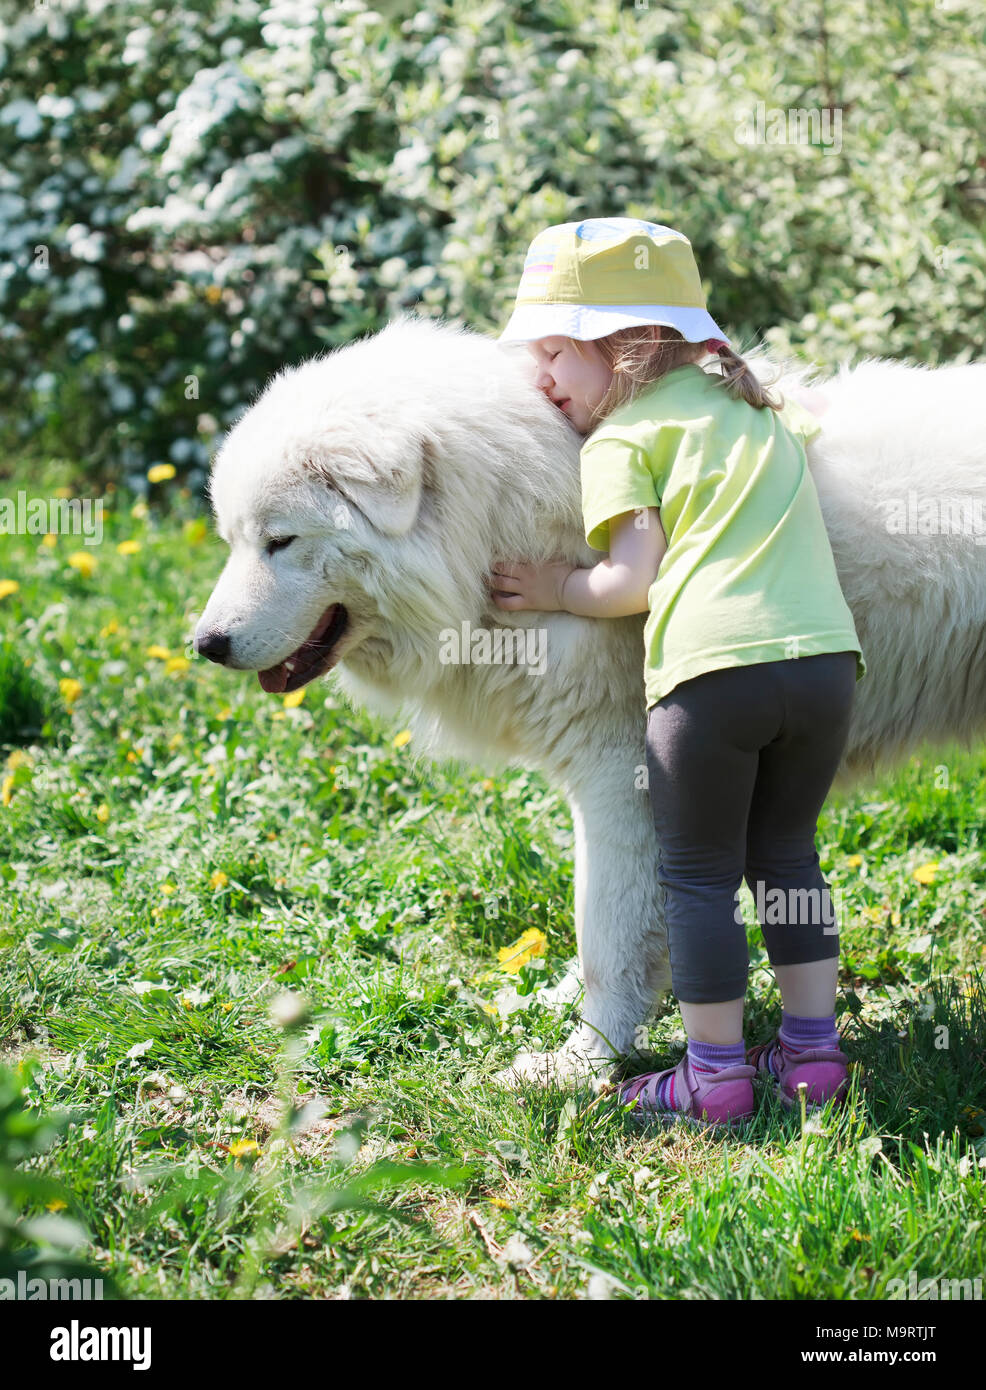 large white shepherd dog